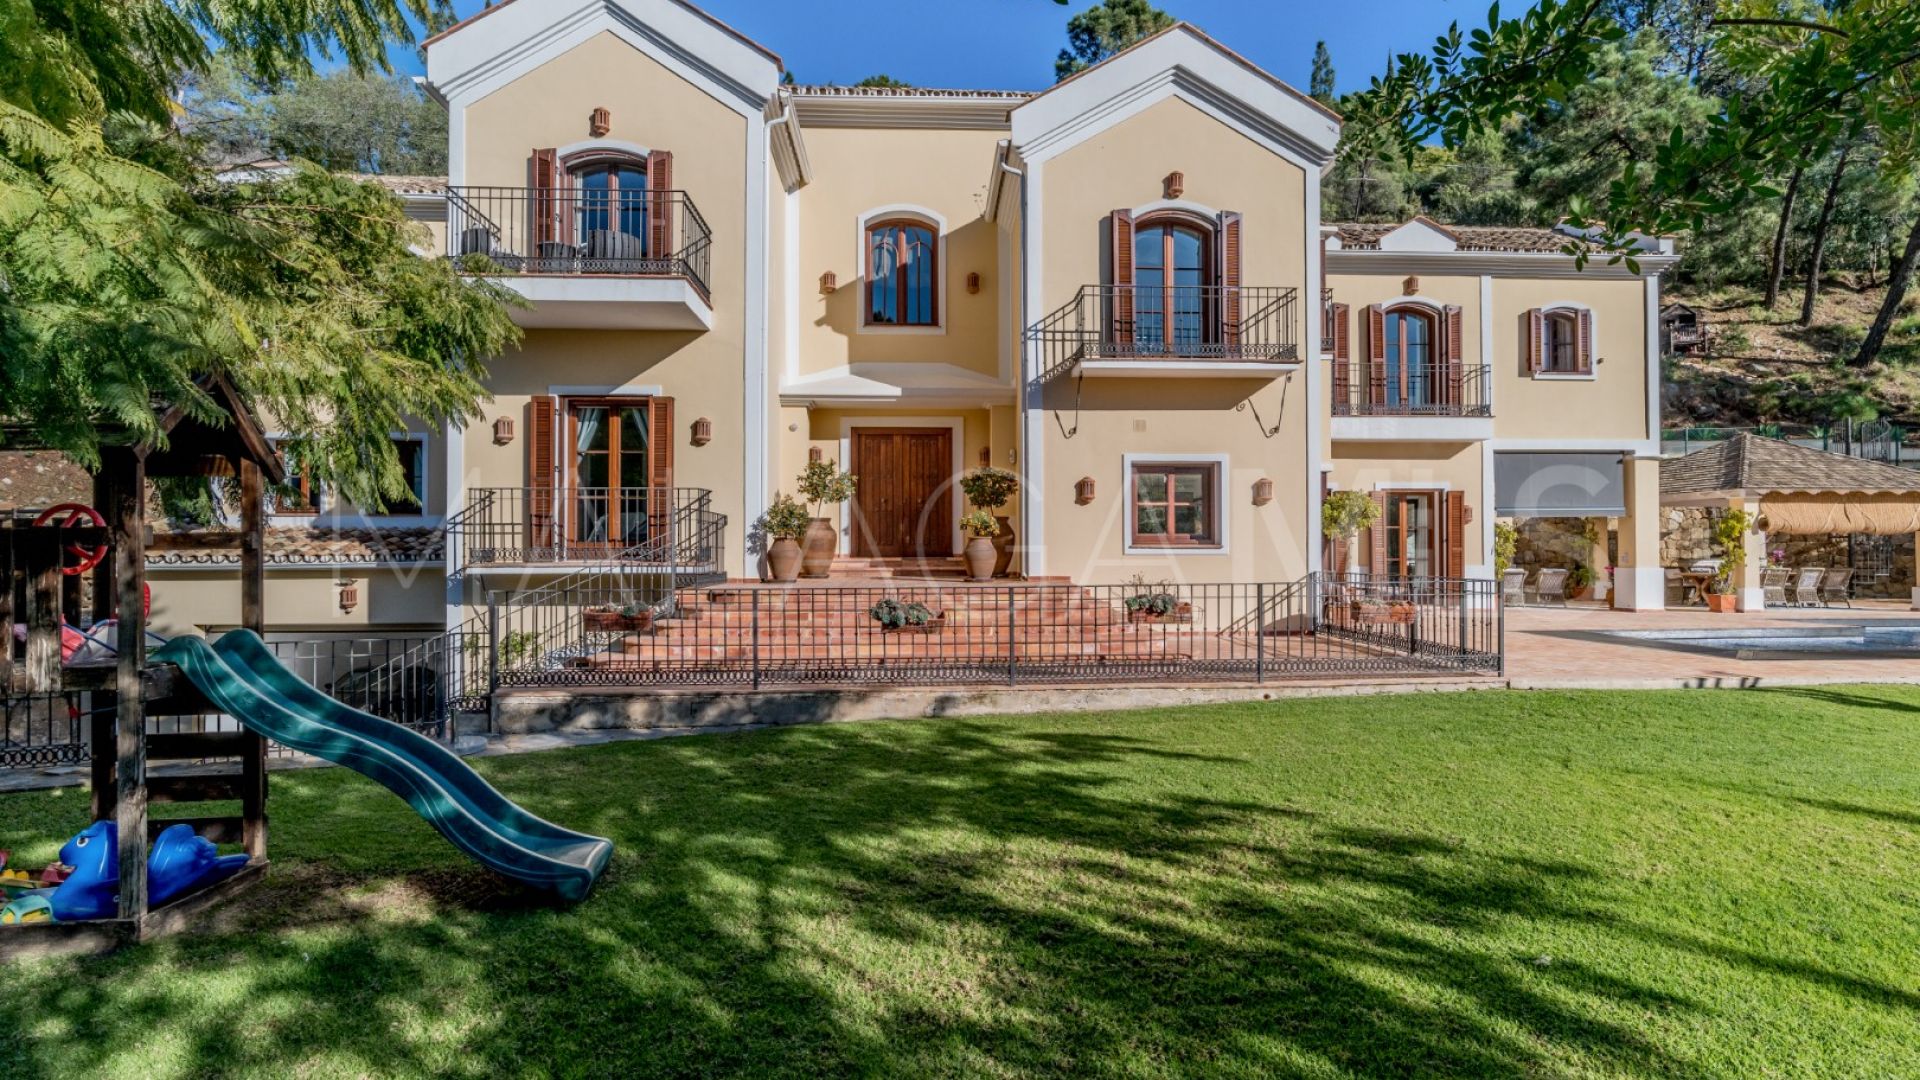 Villa for sale in El Madroñal with 7 bedrooms